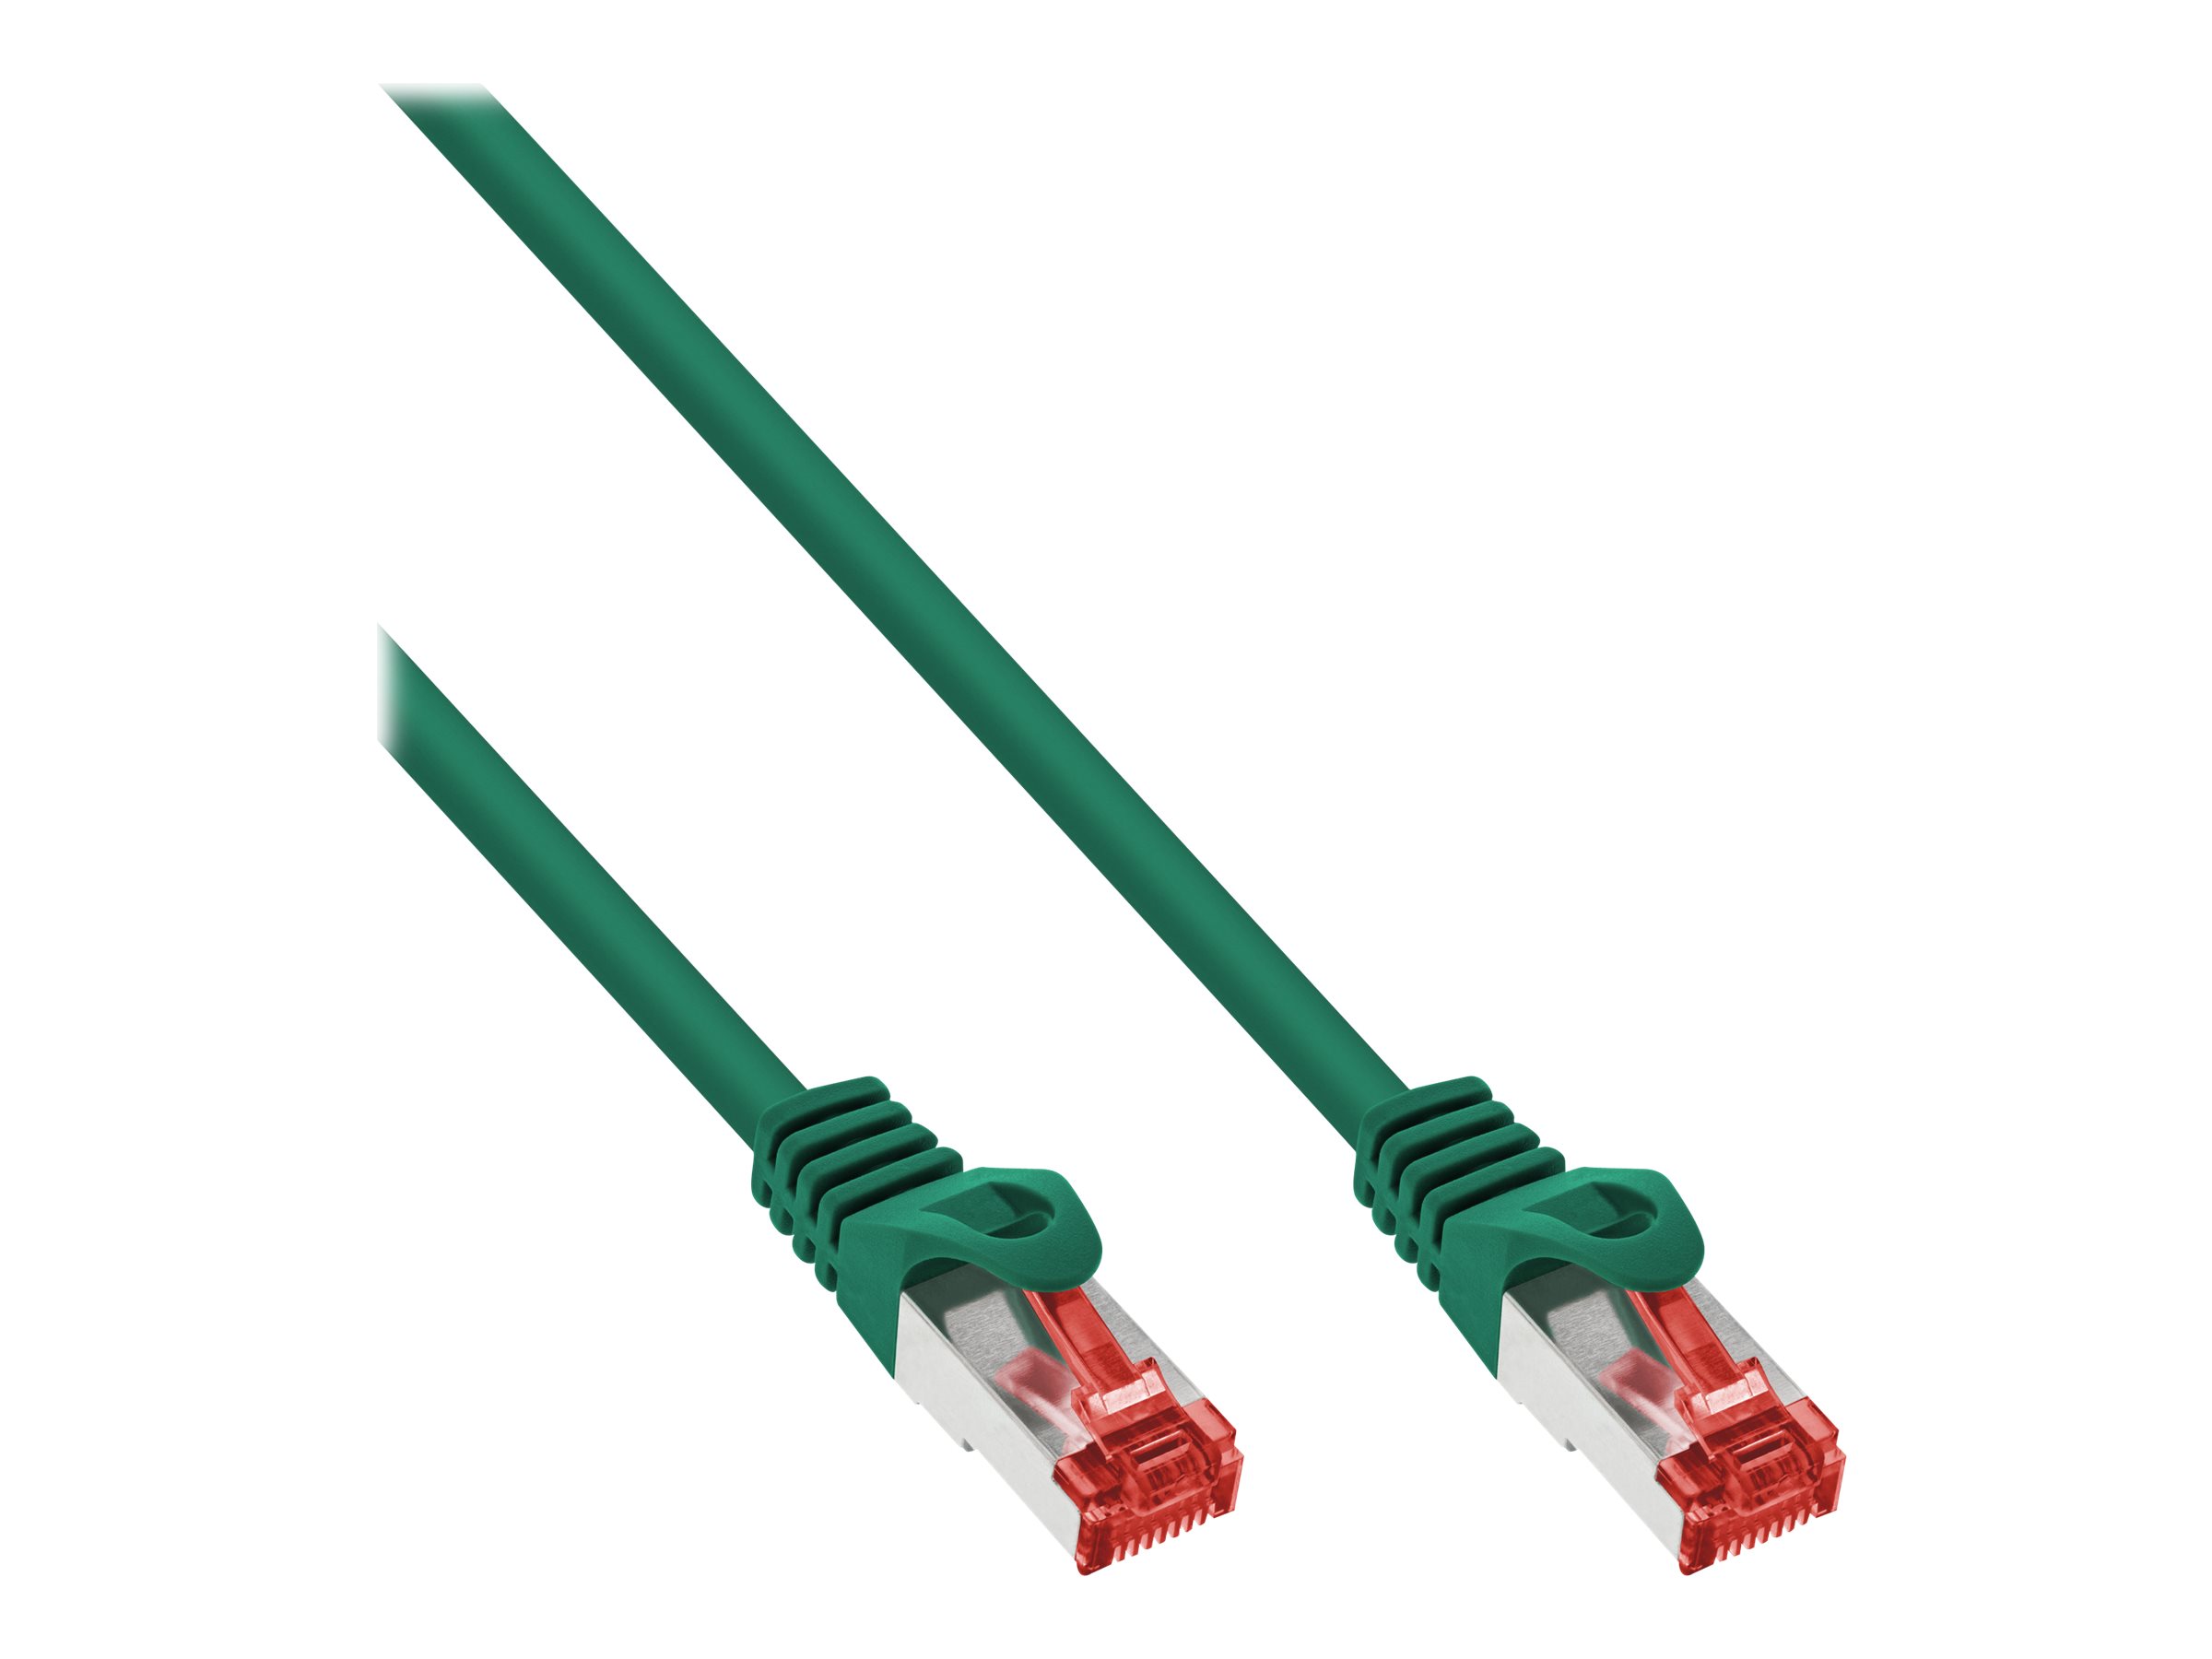 Kabel & Adapter kaufen OCTO24 Shop günstig IT Sie Online im